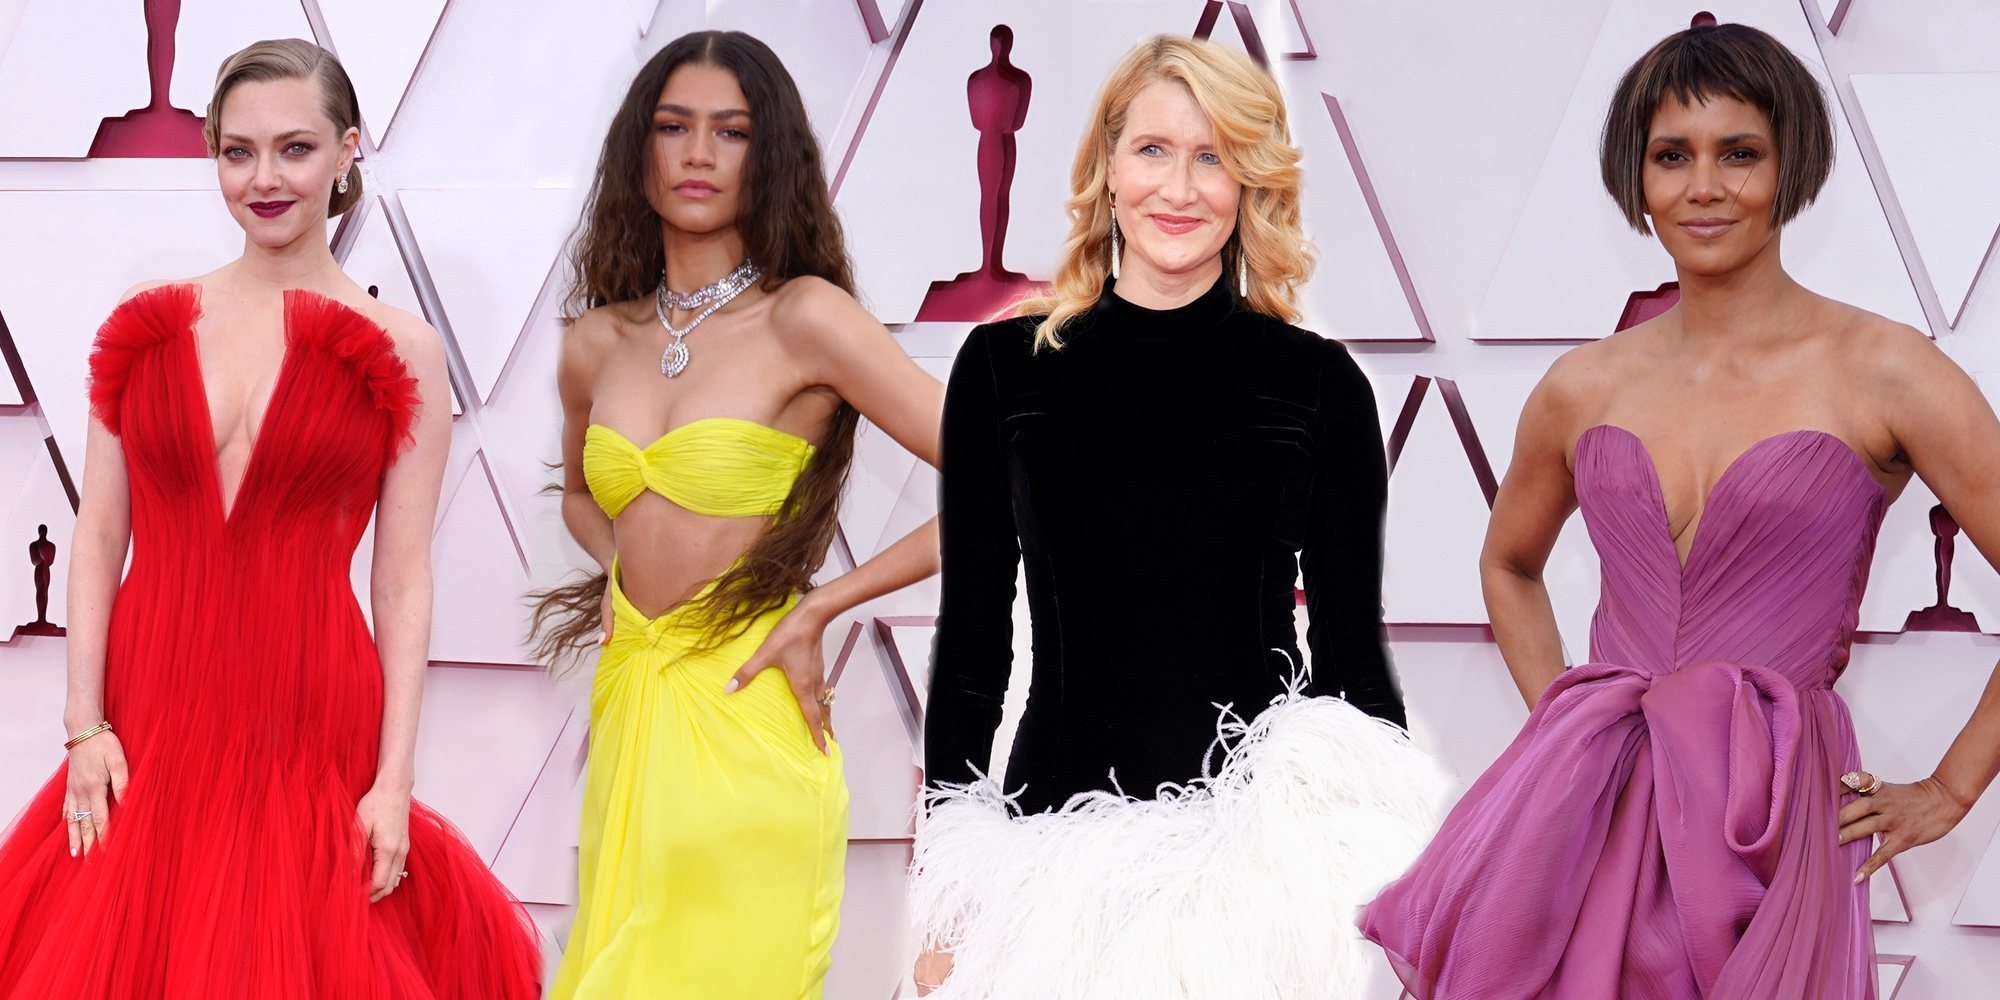 Muy colorida y sin mascarillas: Así ha sido la alfombra roja de los Premios Oscar 2021 que recuerda a las pre-covid